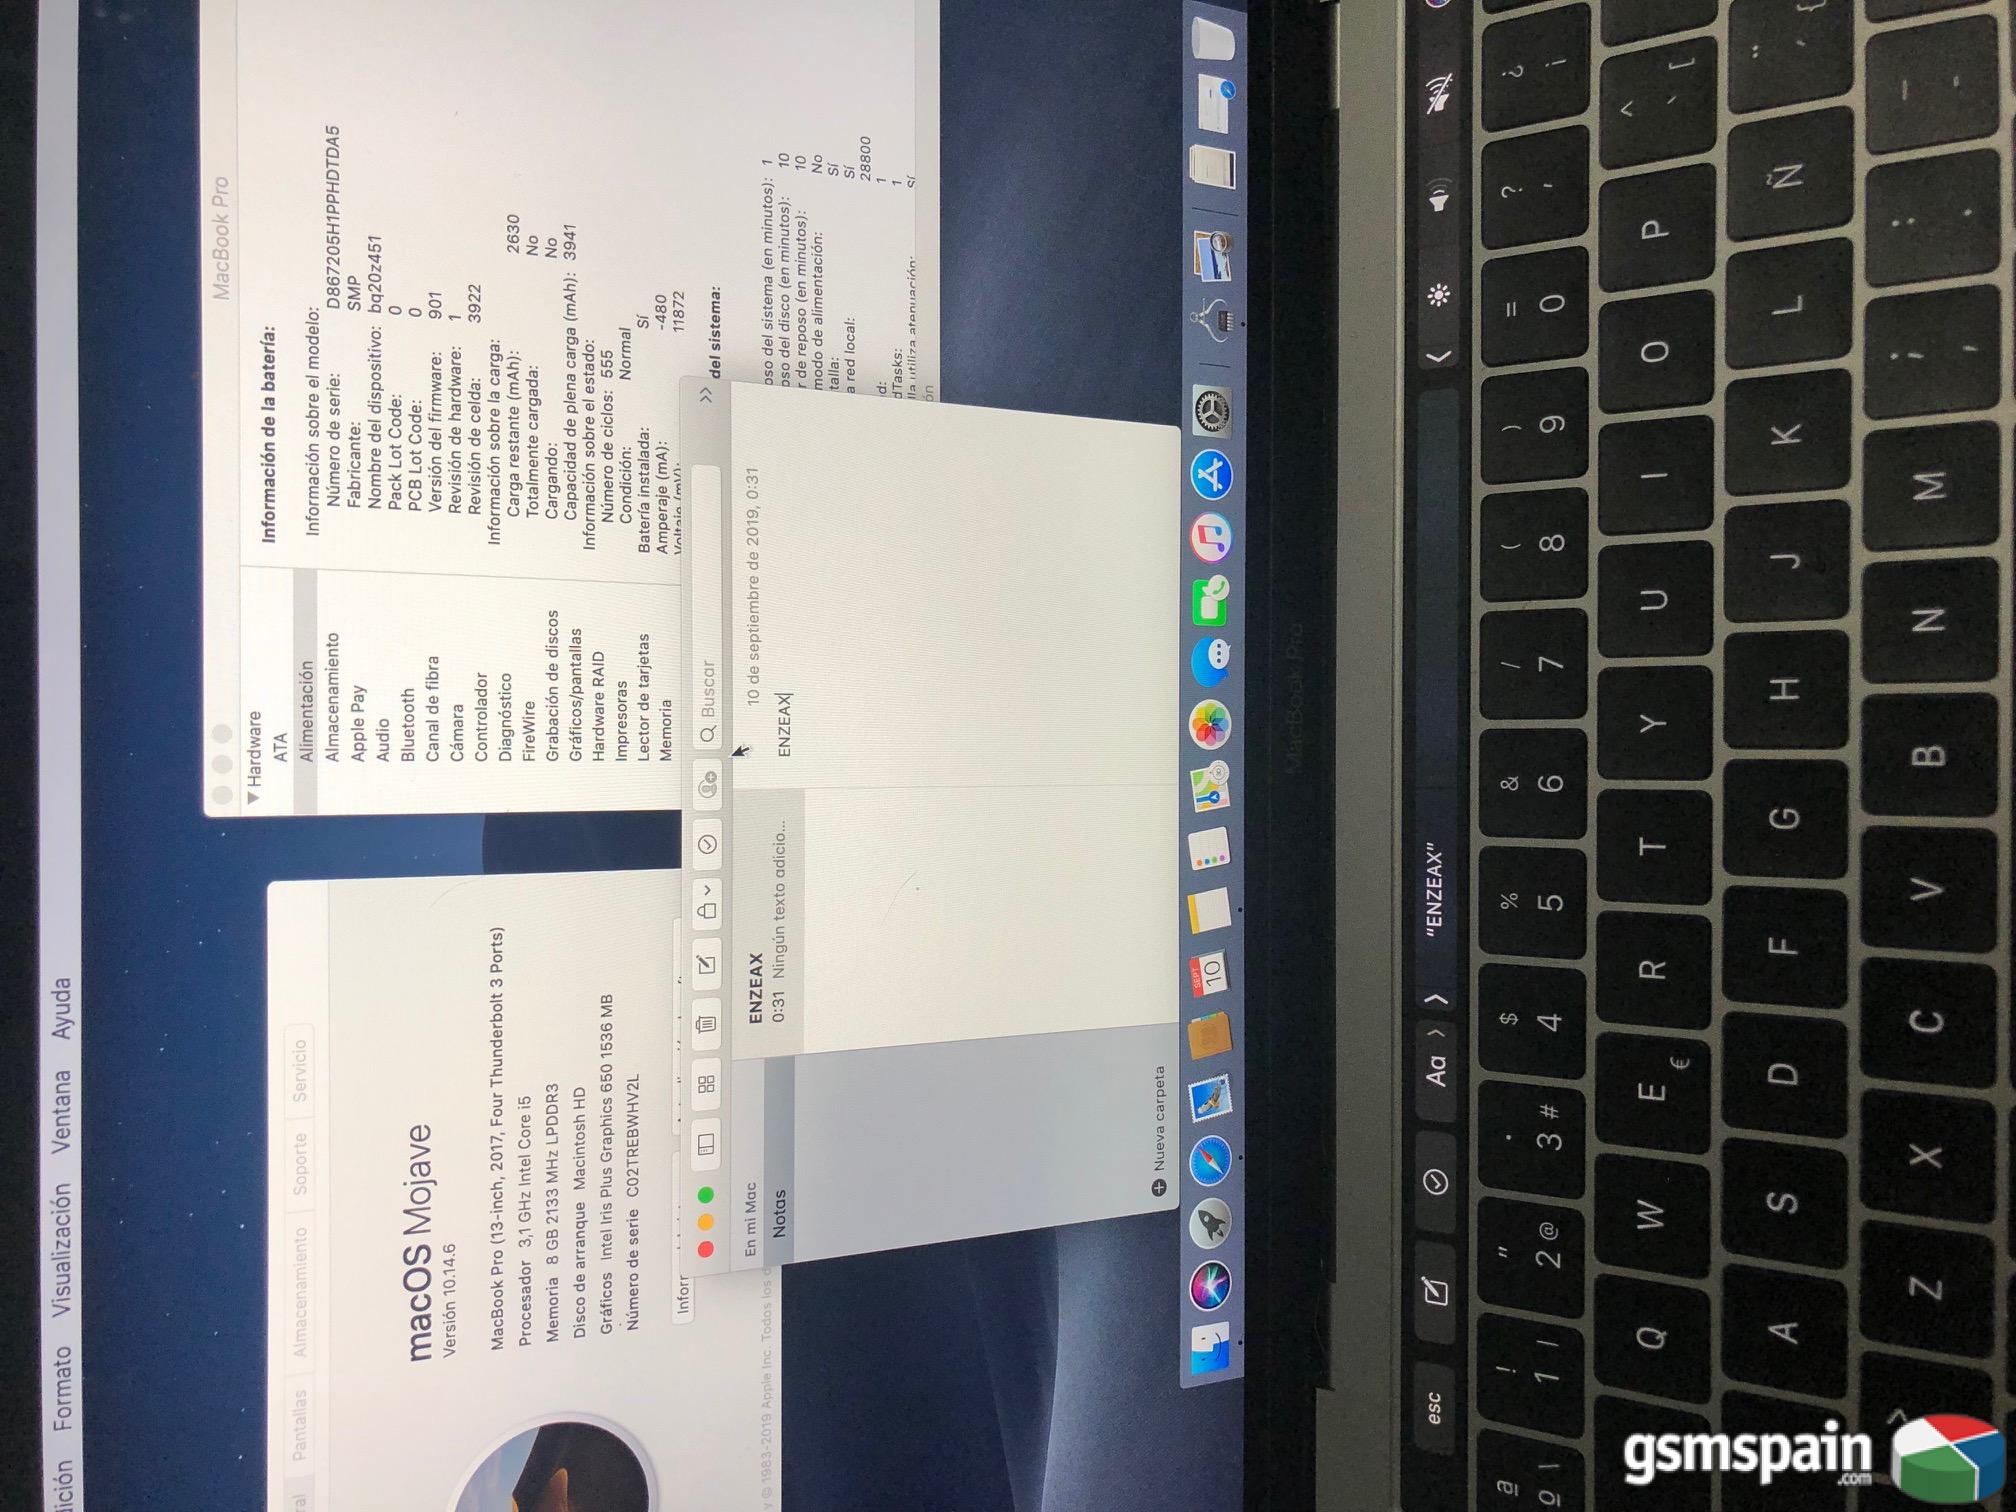 [VENDO] Mac book pro 13" con Touch Bar 2017